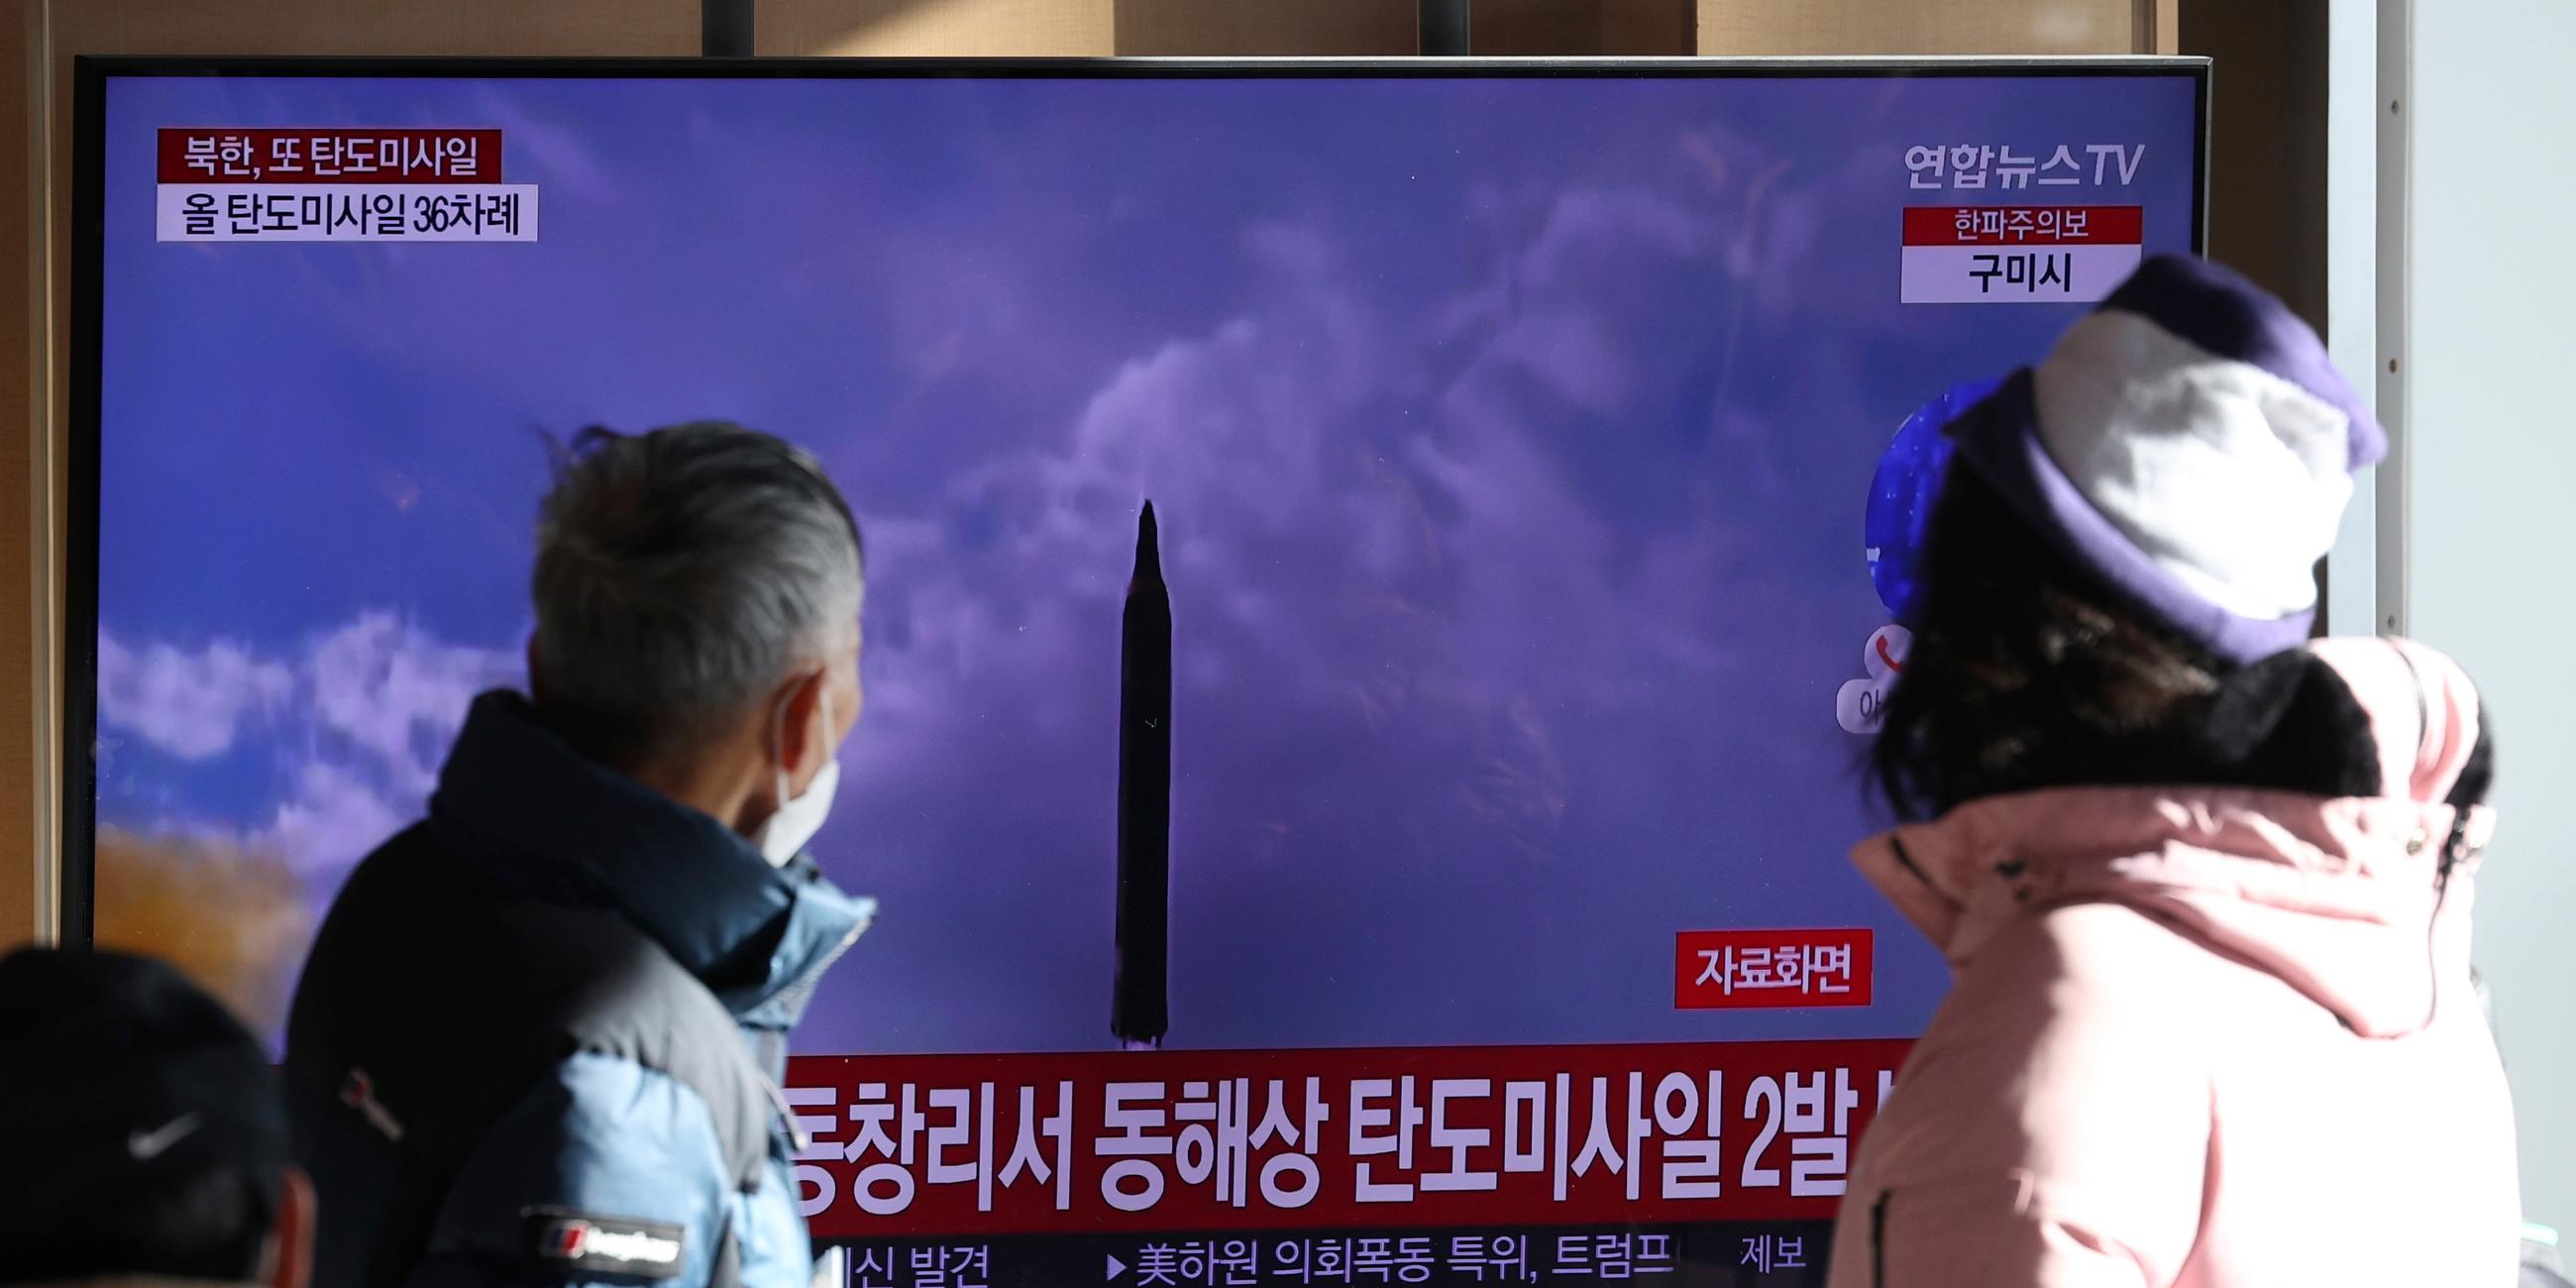 Südkorea, Seoul: Menschen sehen auf einen Fernsehbildschirm, auf dem eine Nachrichtensendung über den nordkoreanischen Raketenstart mit Filmmaterial gezeigt wird, im Bahnhof von Seoul.